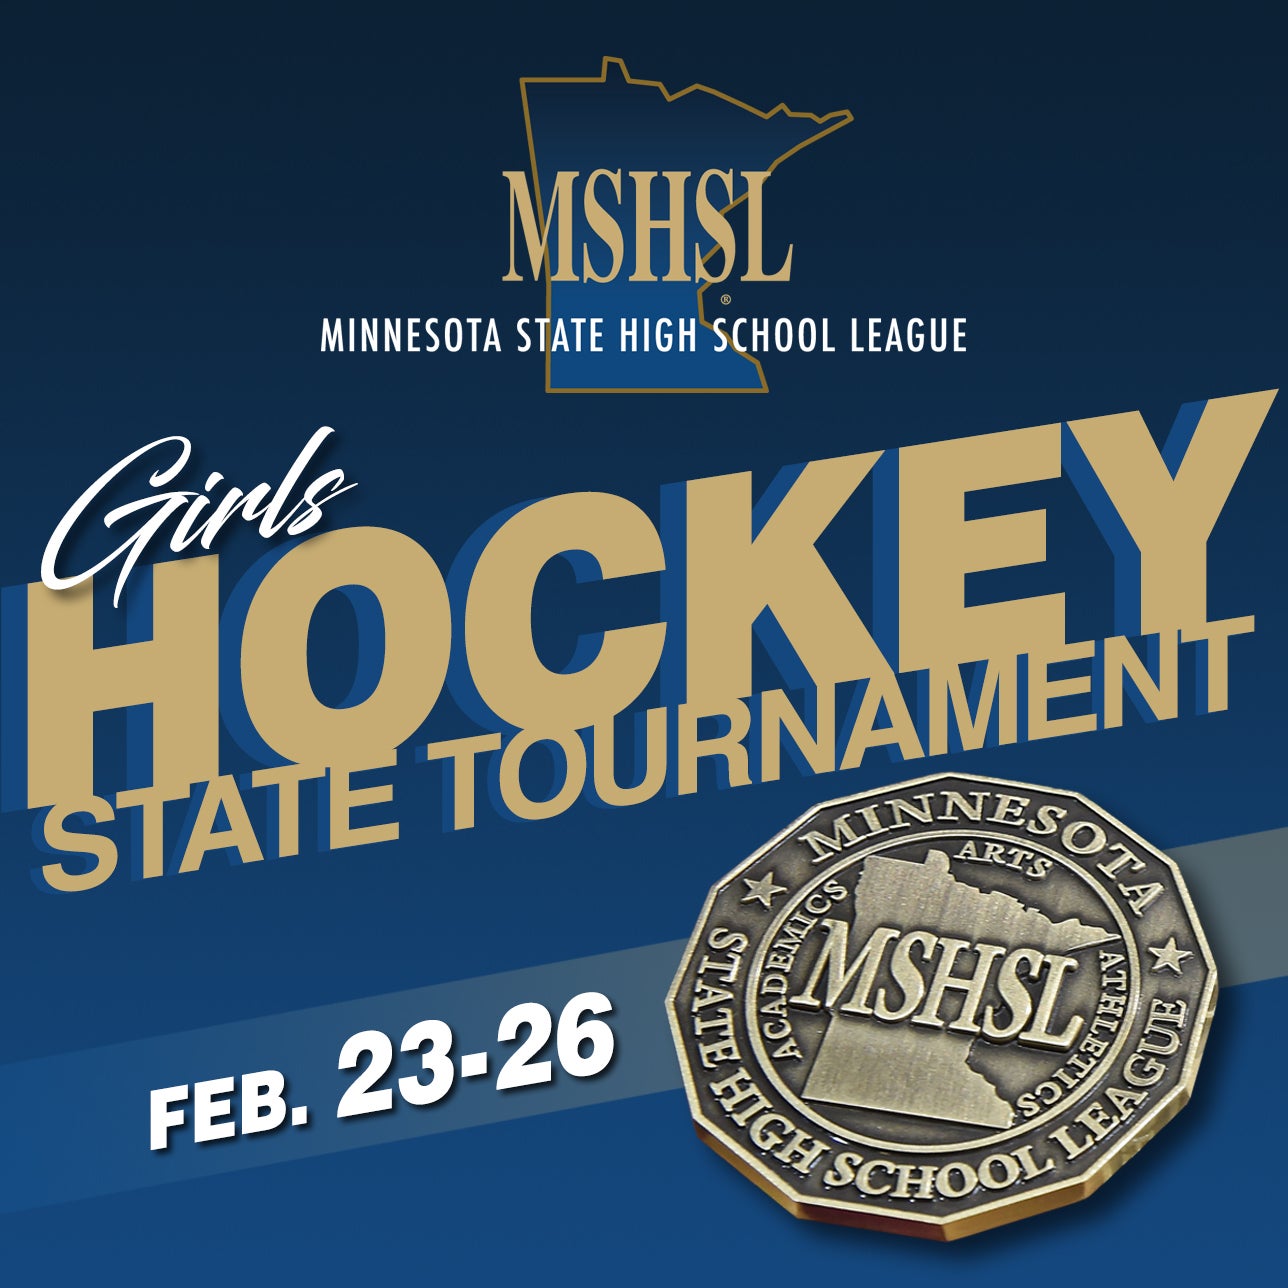 MSHSL Girls Hockey State Tournament